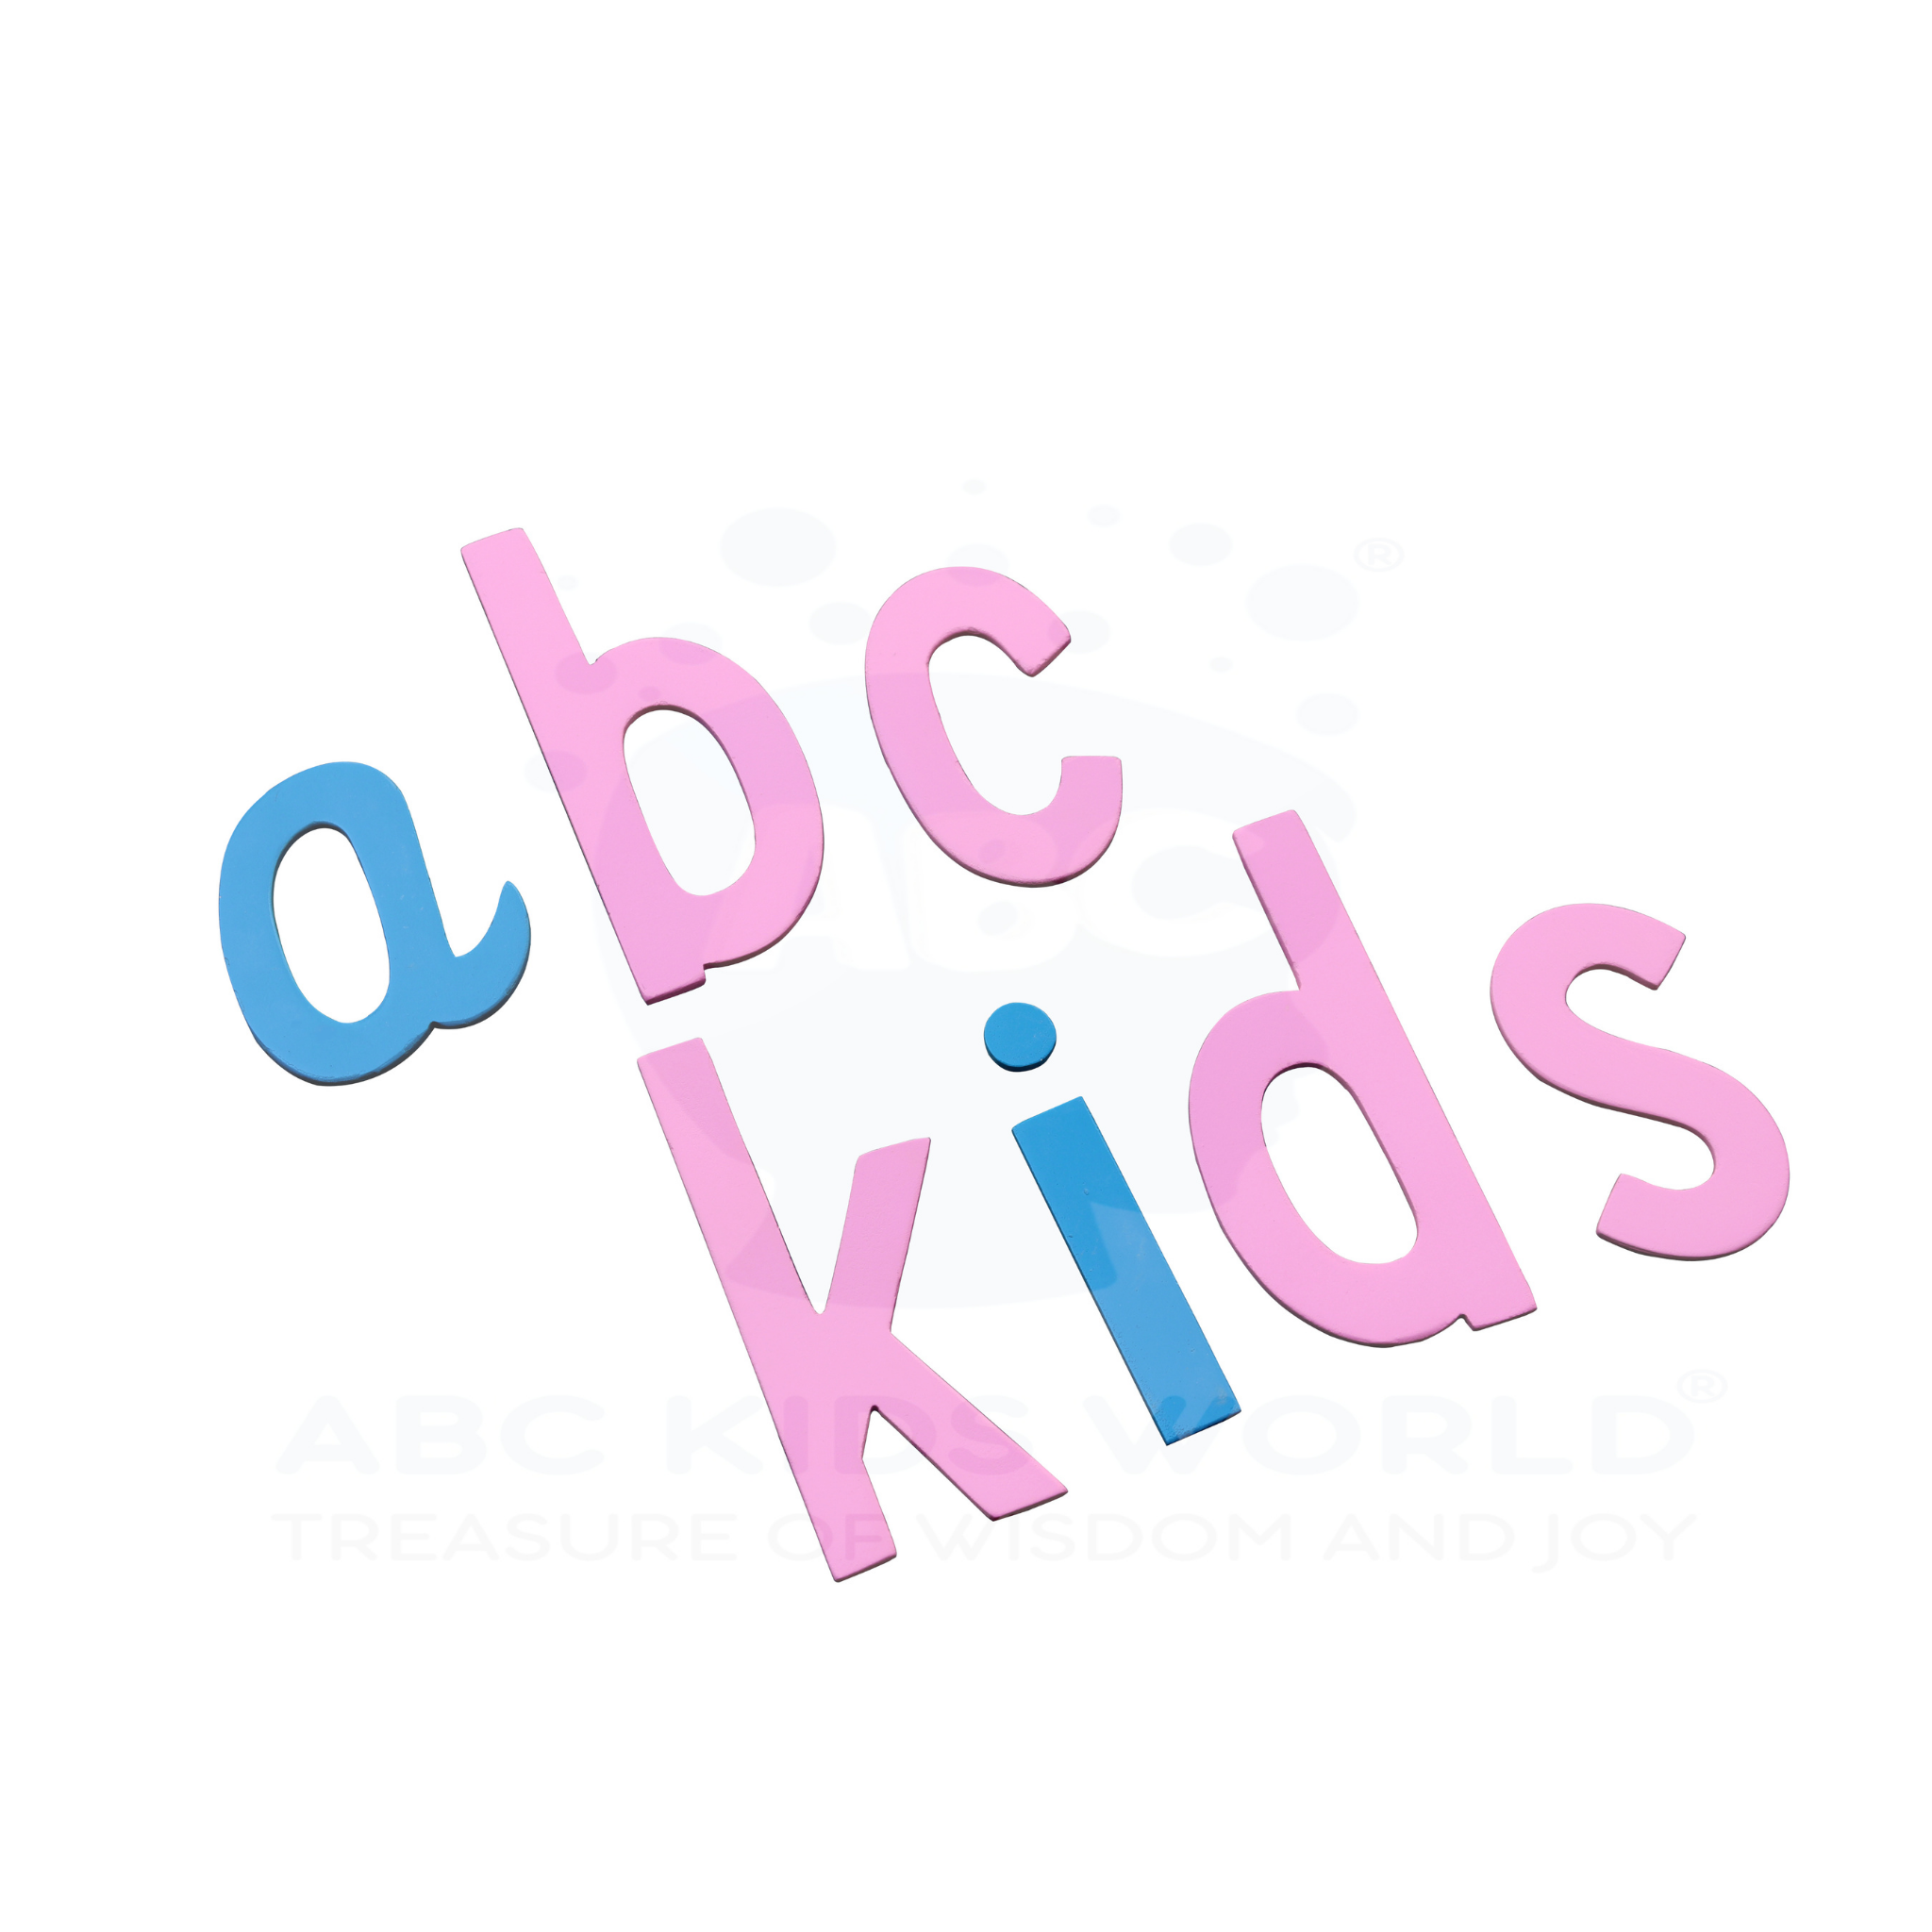 abc kids logo